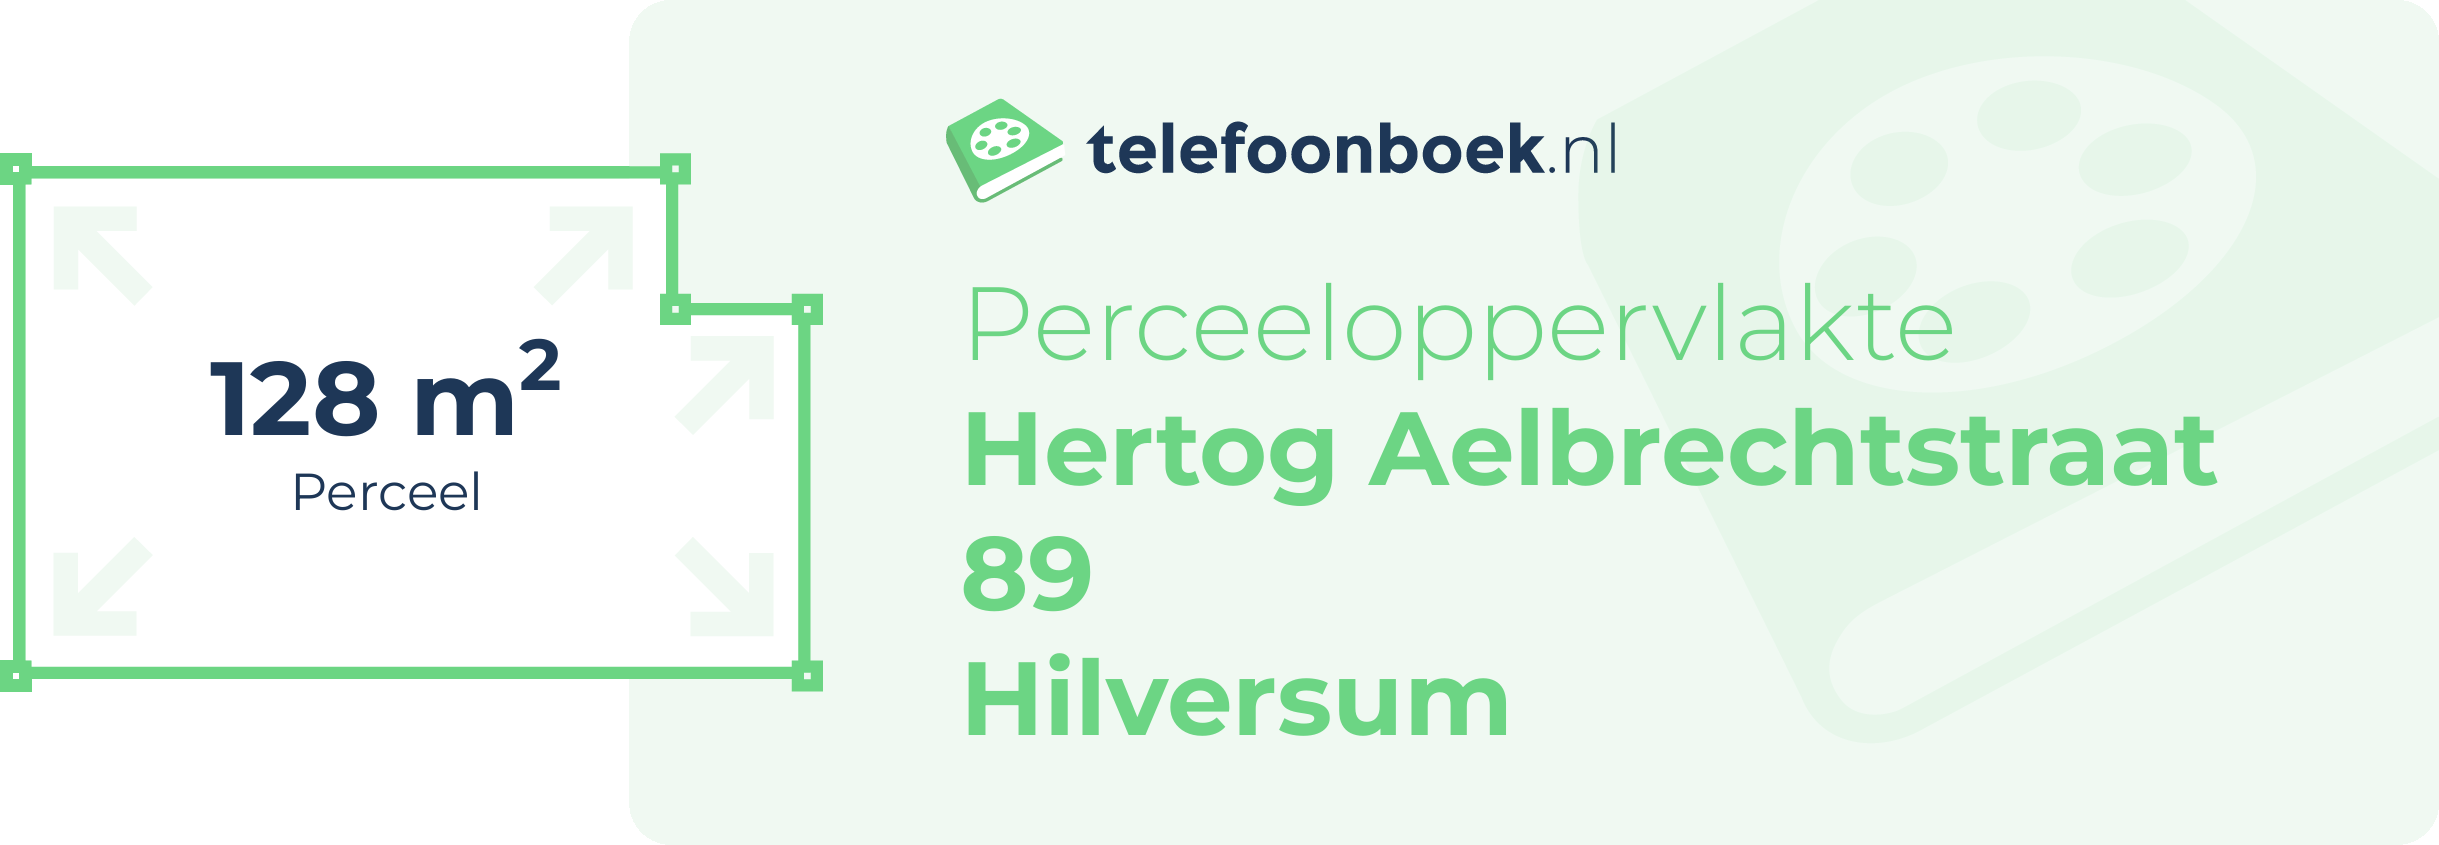 Perceeloppervlakte Hertog Aelbrechtstraat 89 Hilversum